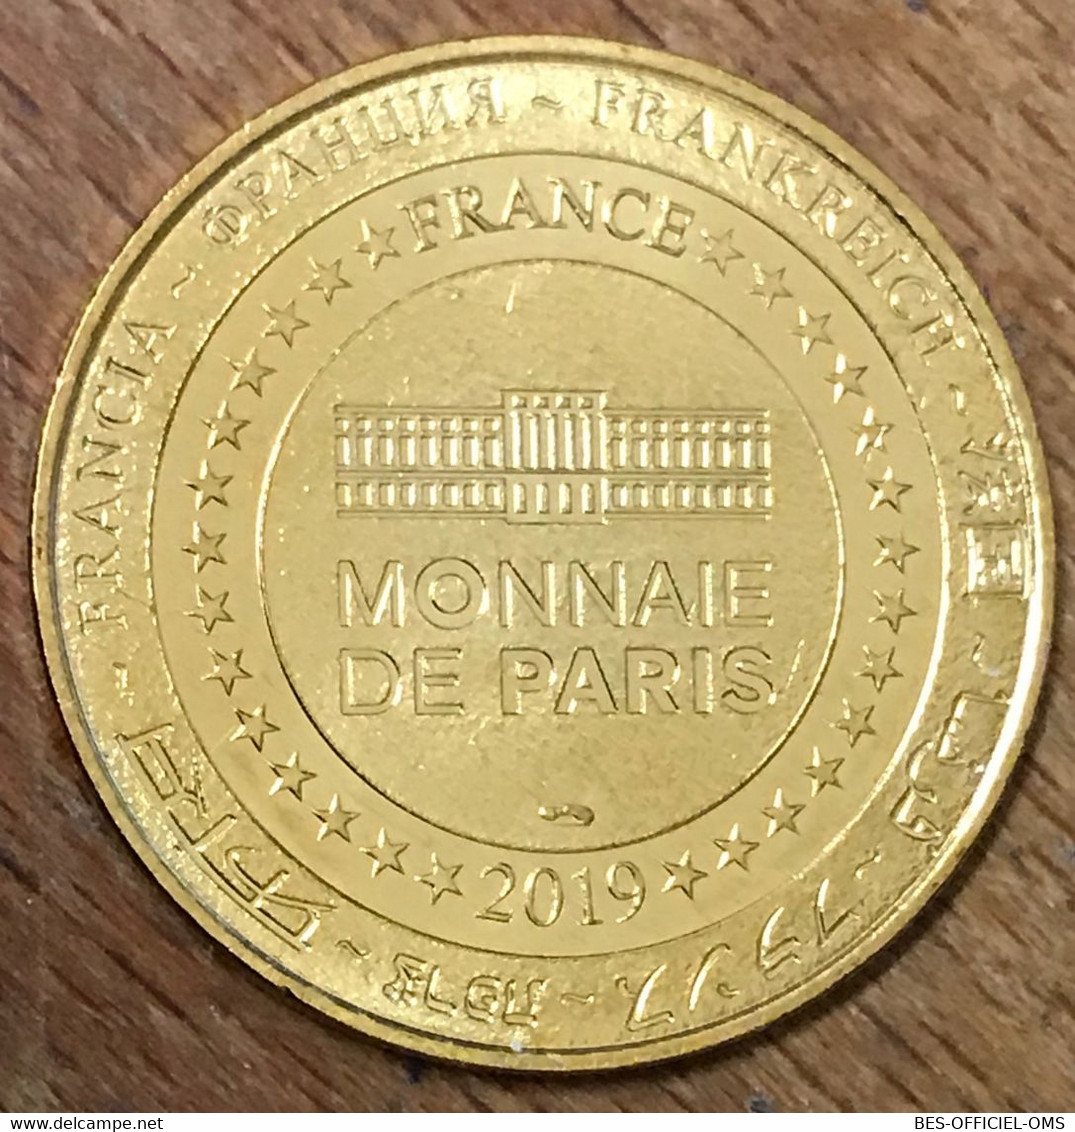 75009 PARIS MUSÉE GRÉVIN COLONE JACKSON MDP 2019 MEDAILLE SOUVENIR MONNAIE DE PARIS JETON TOURISTIQUE MEDALS COINS TOKEN - 2019